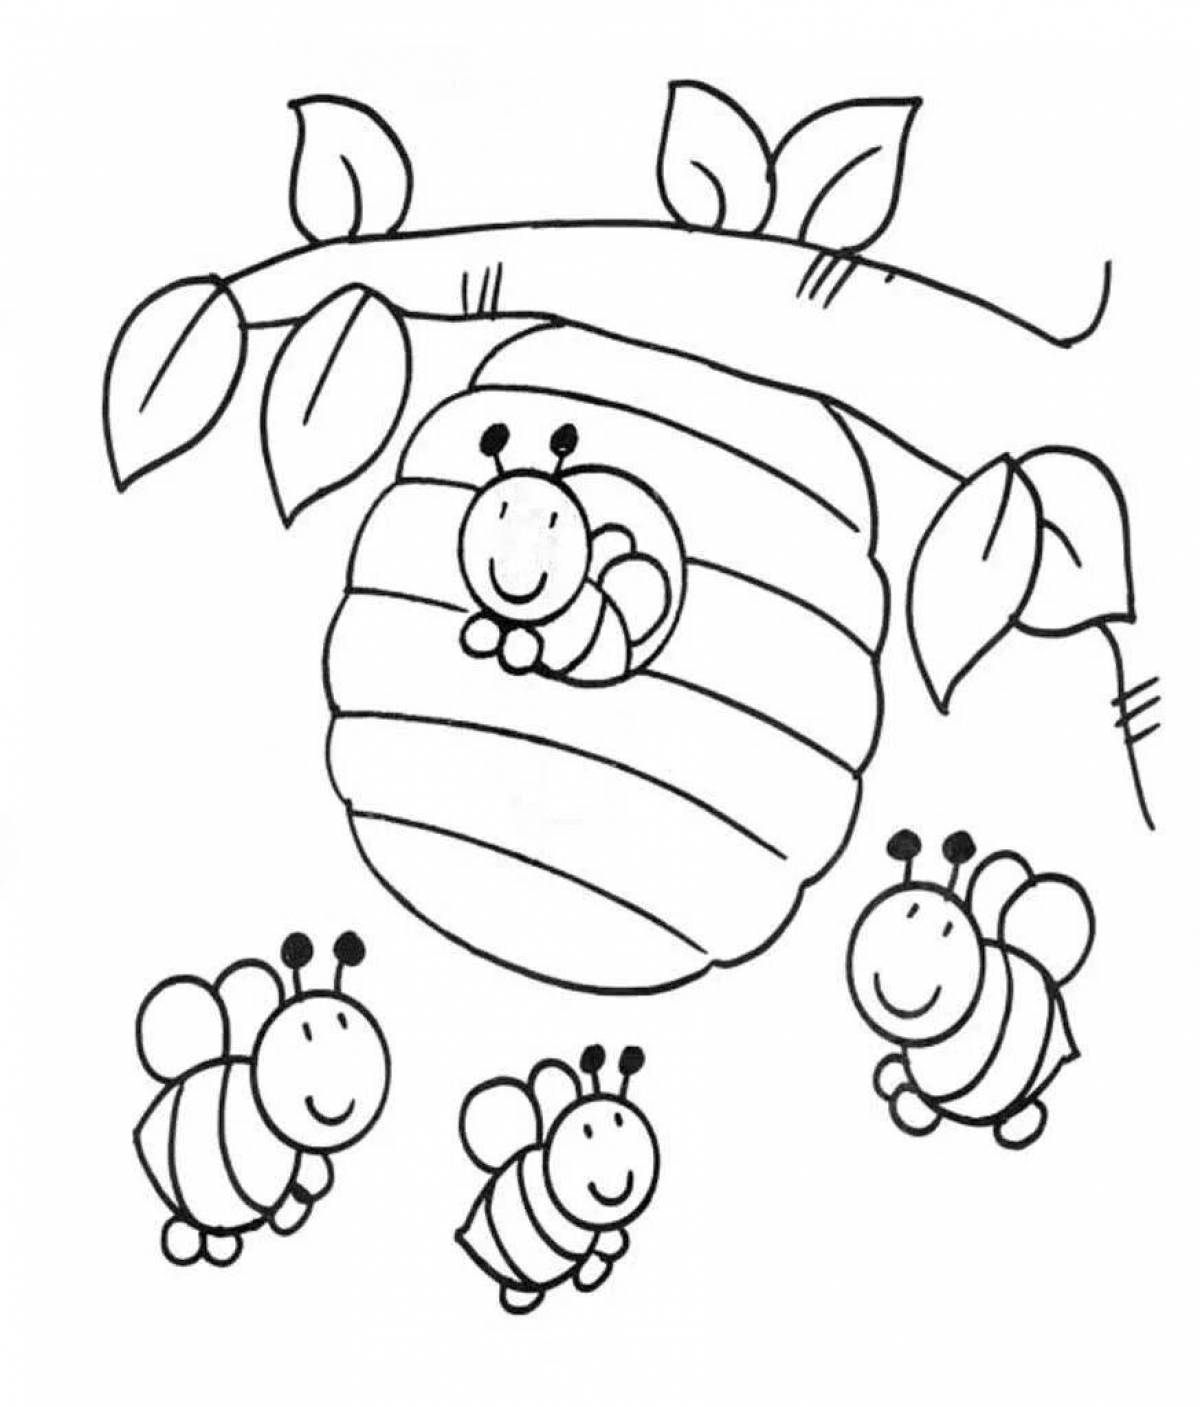 Раскраска причудливый пчеловод